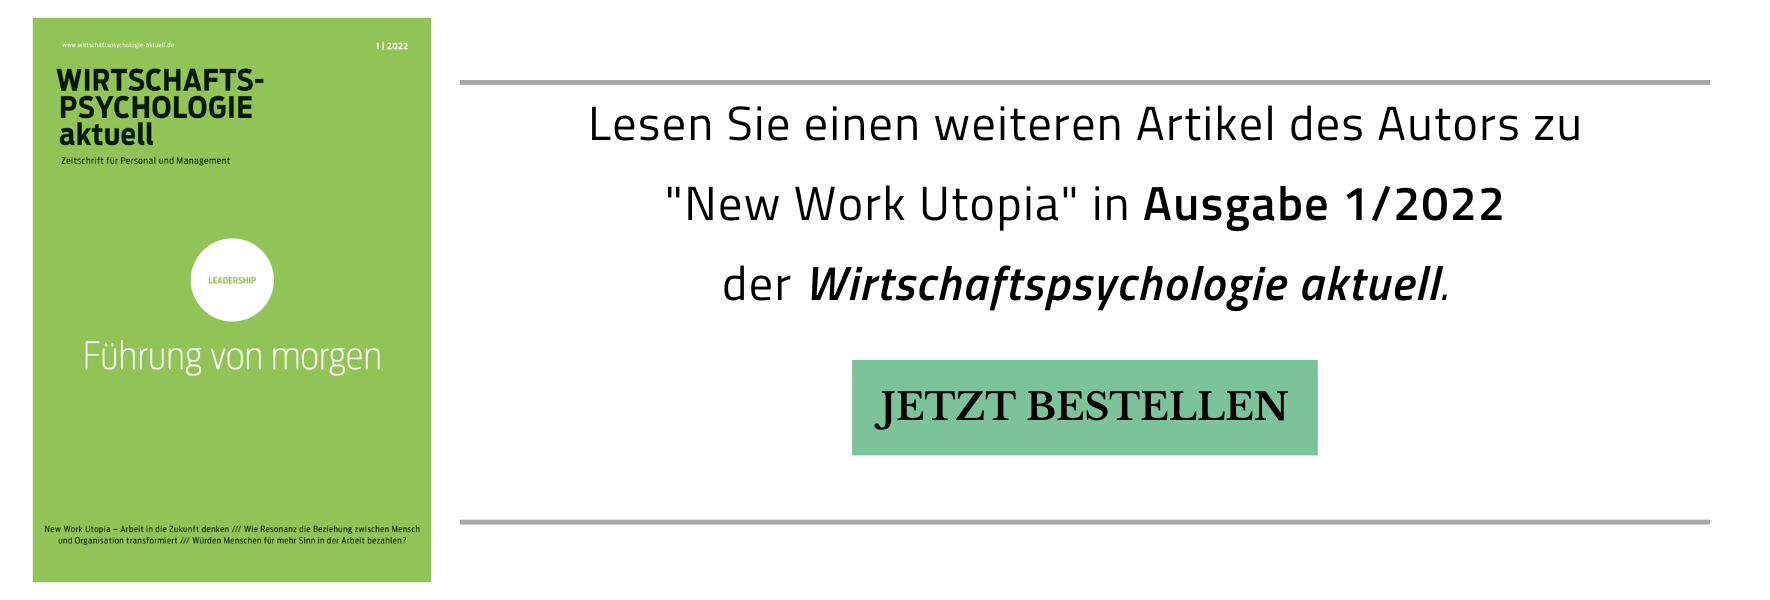 Bestellhinweis auf Ausgabe 1/2022 der Wirtschaftspsychologie aktuell, die einen weiteren Artikel des Autors zu "New Work Utopia" enthält.